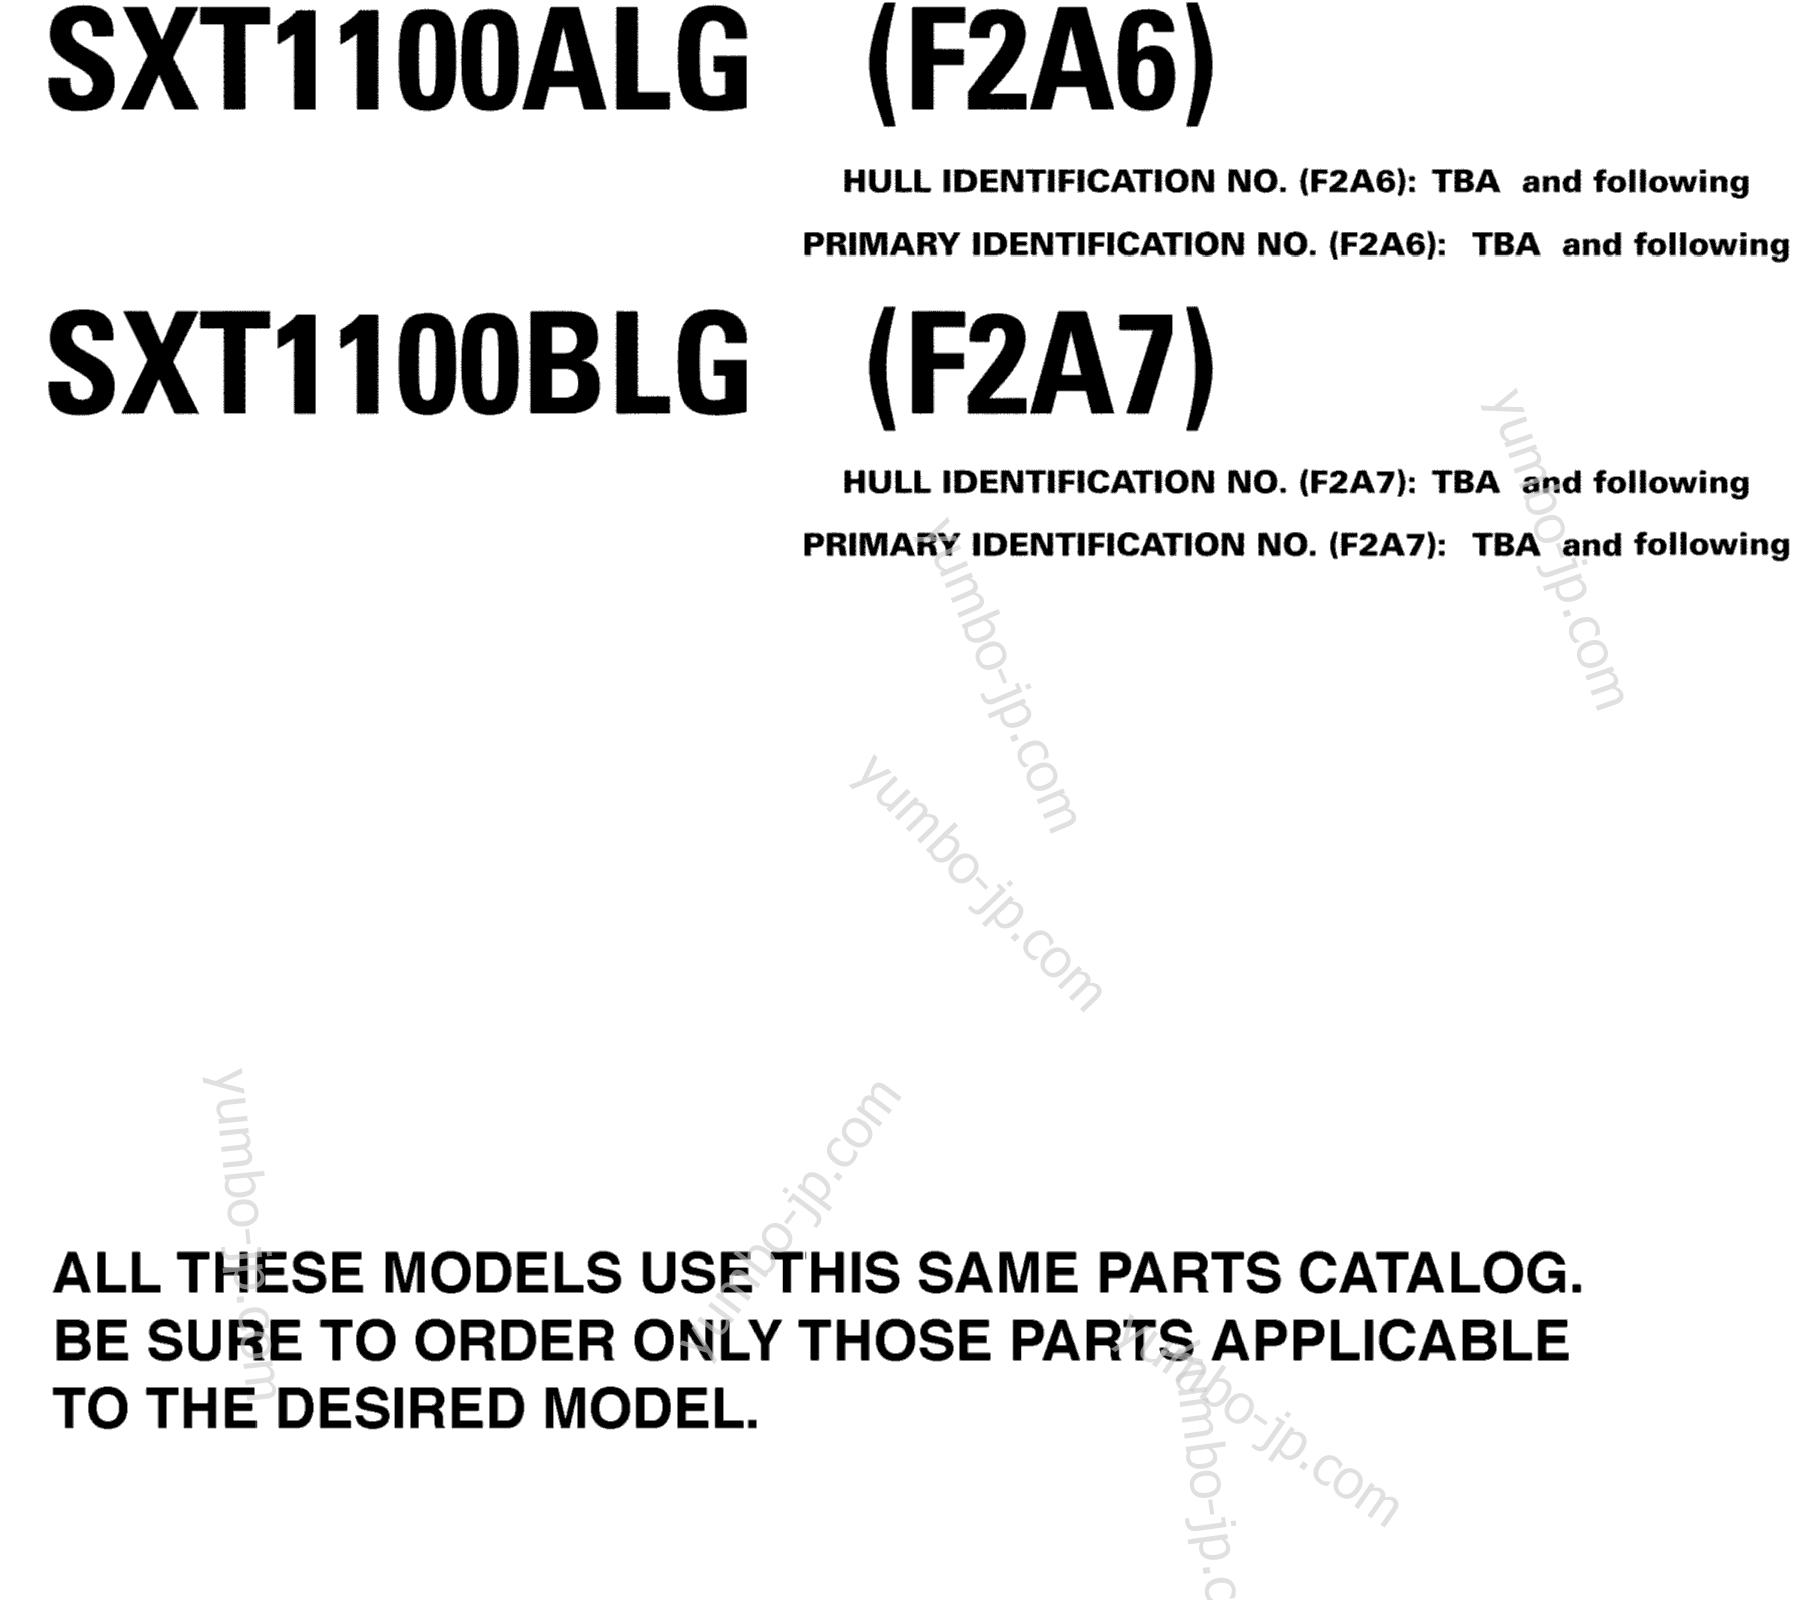 Models In This Catalog для катеров YAMAHA AR230 HO CA & NY (SXT1100ALG) CA 2008 г.